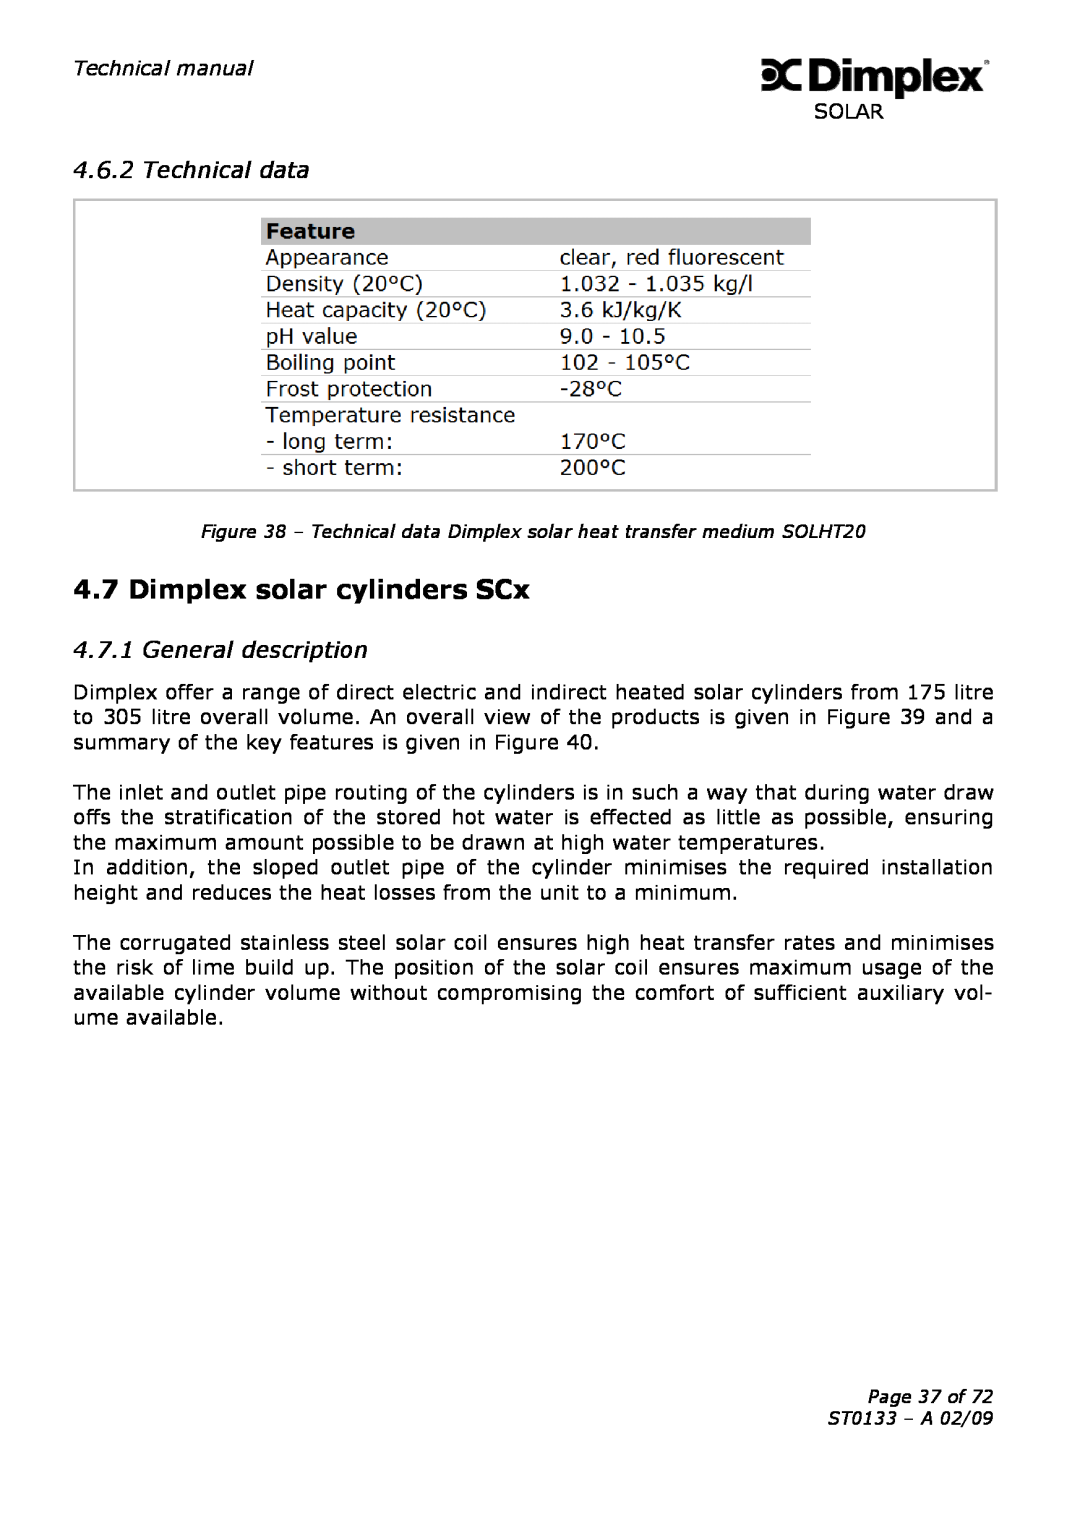 Dimplex ST0133 technical manual Dimplex solar cylinders SCx, Technical data, General description 